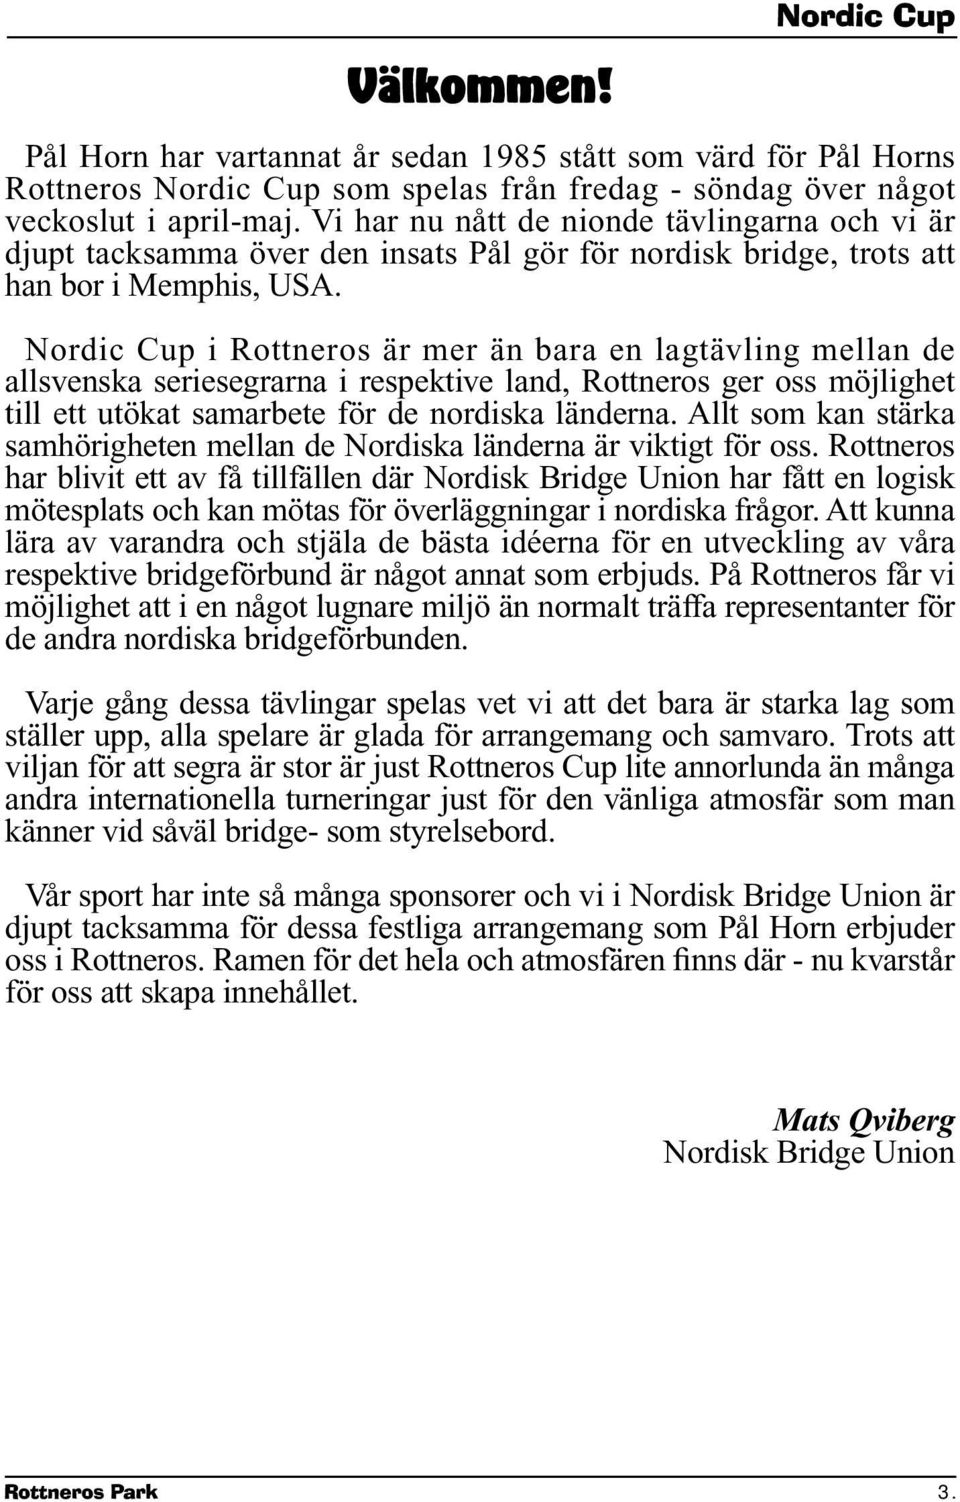 Nordic Cup i Rottneros är mer än bara en lagtävling mellan de allsvenska seriesegrarna i respektive land, Rottneros ger oss möjlighet till ett utökat samarbete för de nordiska länderna.